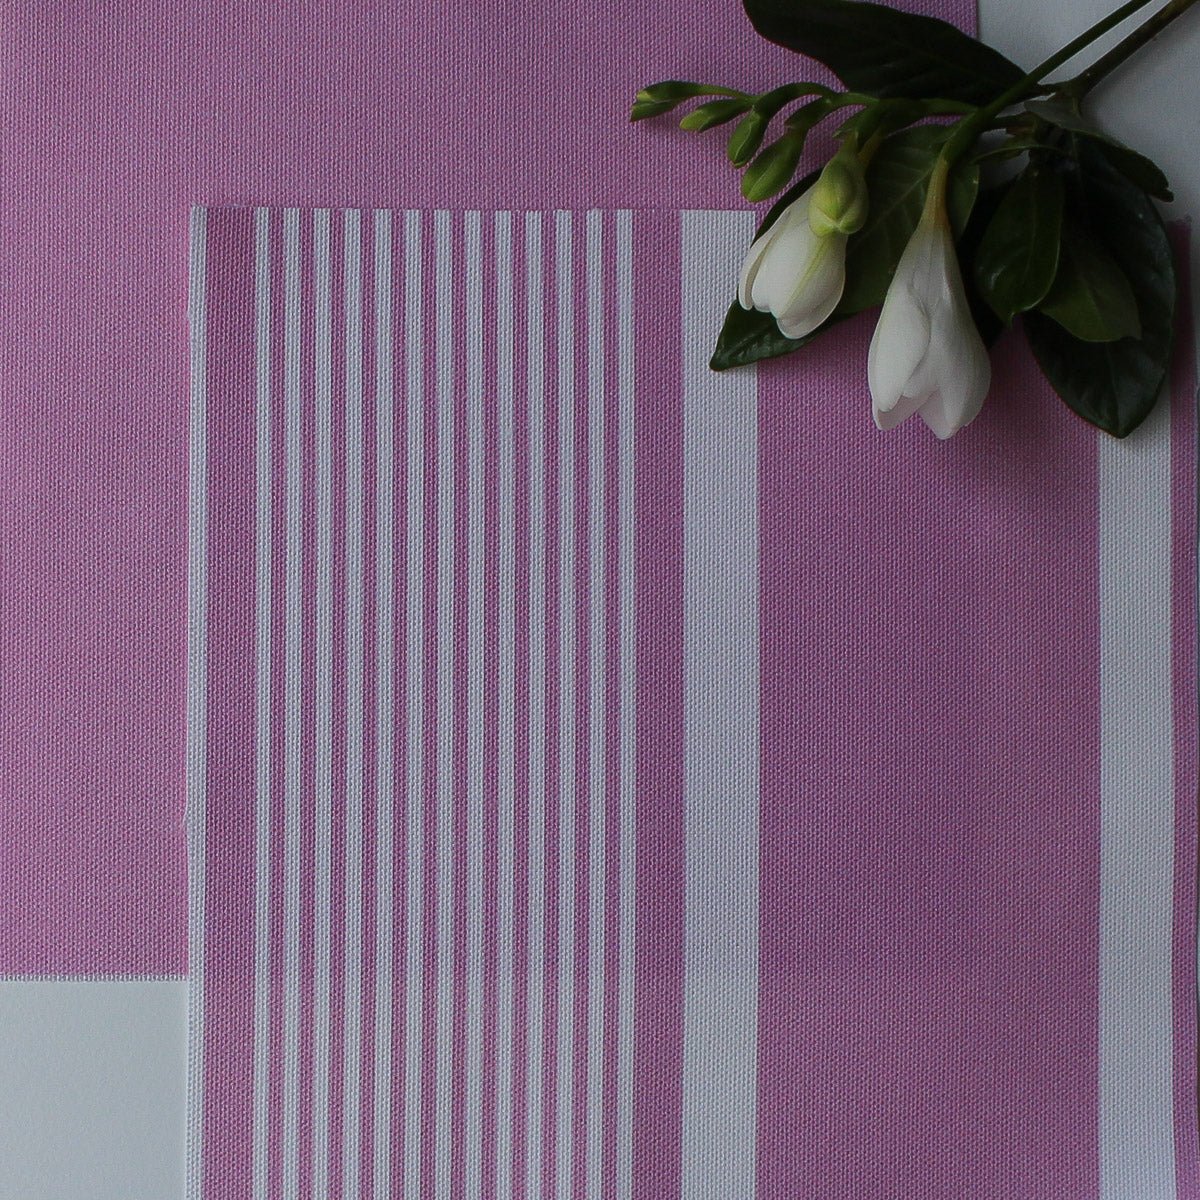 Deckchair Stripe Fabric - Tickled Pink - Hydrangea Lane Home